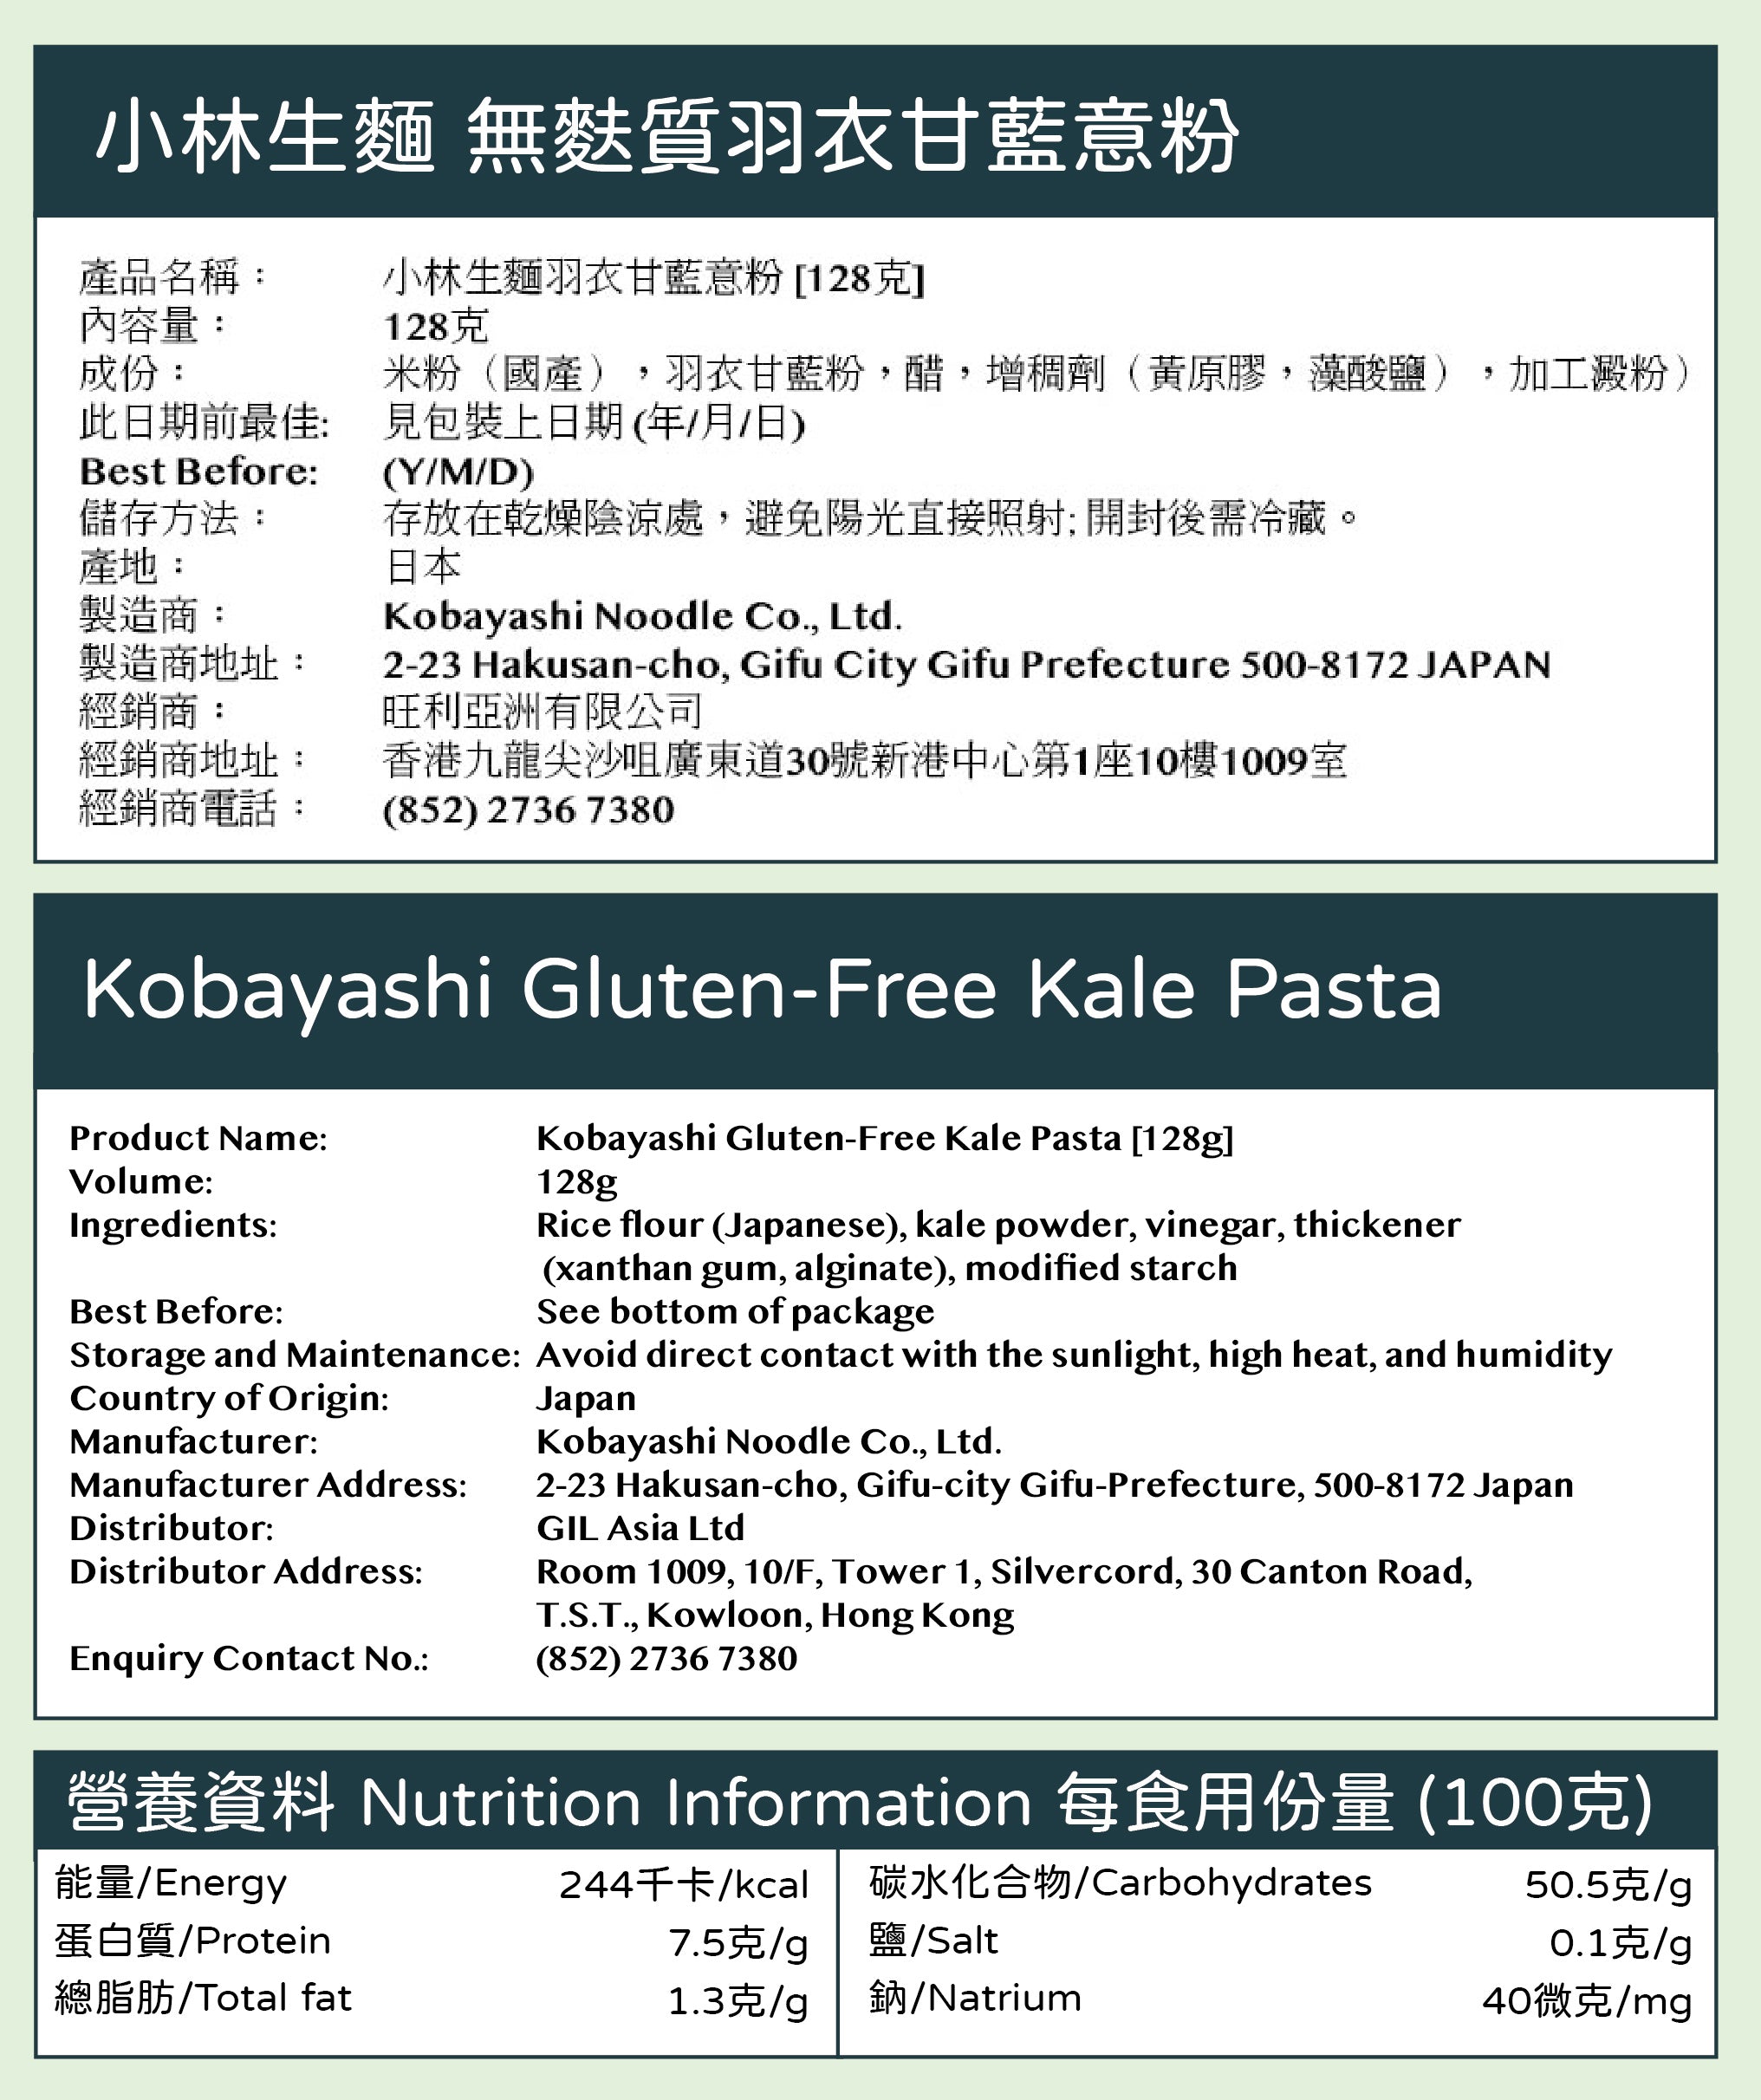 Kobayashi Gluten-Free Kale Pasta [128g]